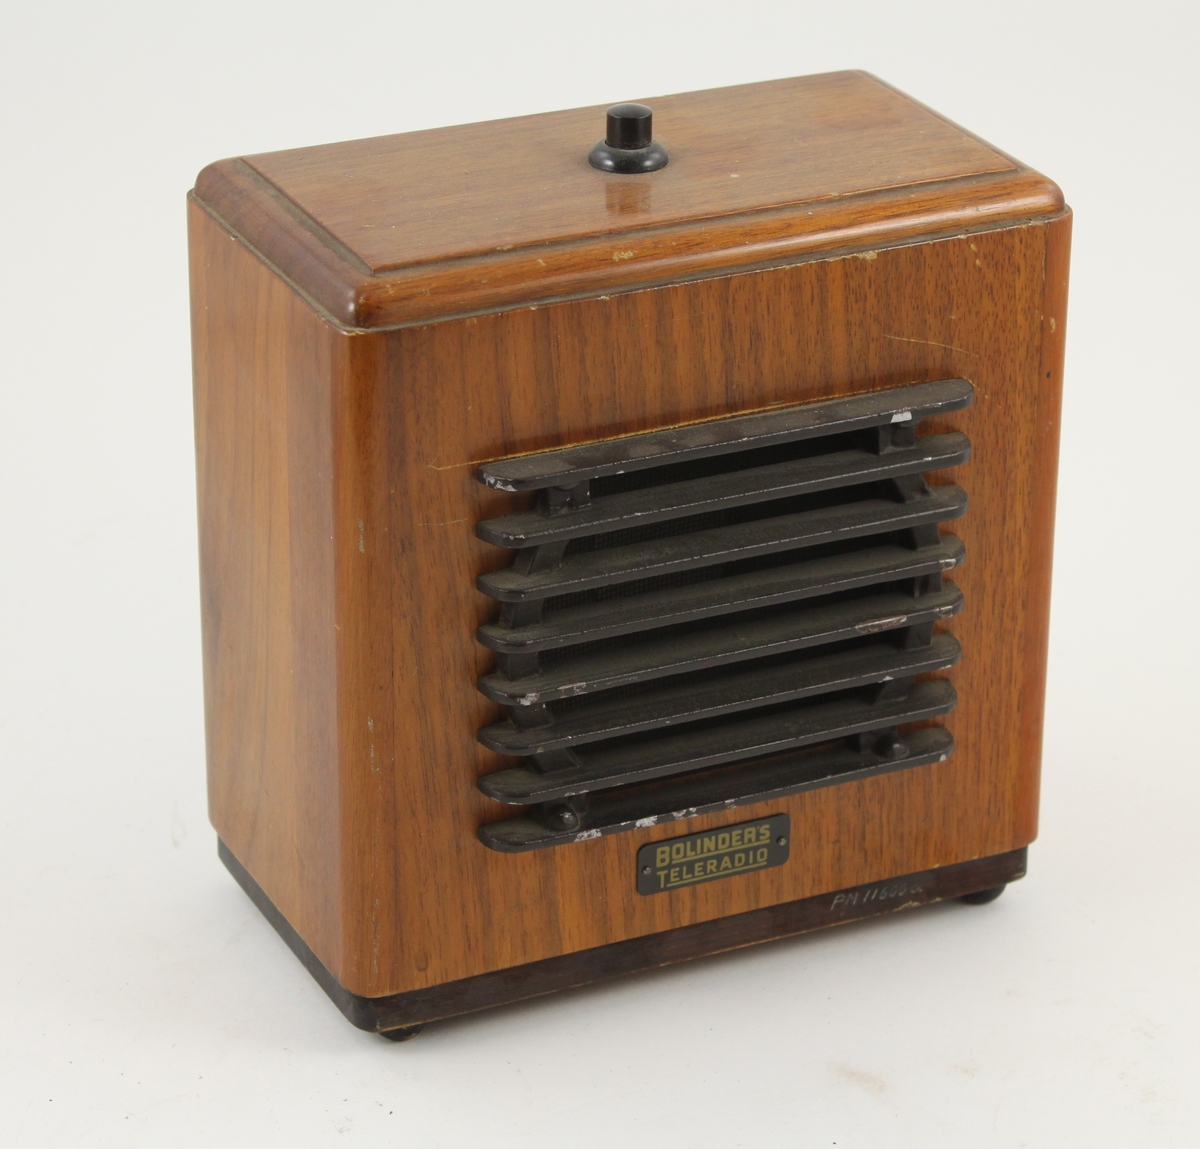 Högtalare till högtalartelefon (PM 11600a) så kallad Bolinders teleradio, inbyggd i på fotknoppar stående låda av polerad björk. Manöverknapp på lådans översida.